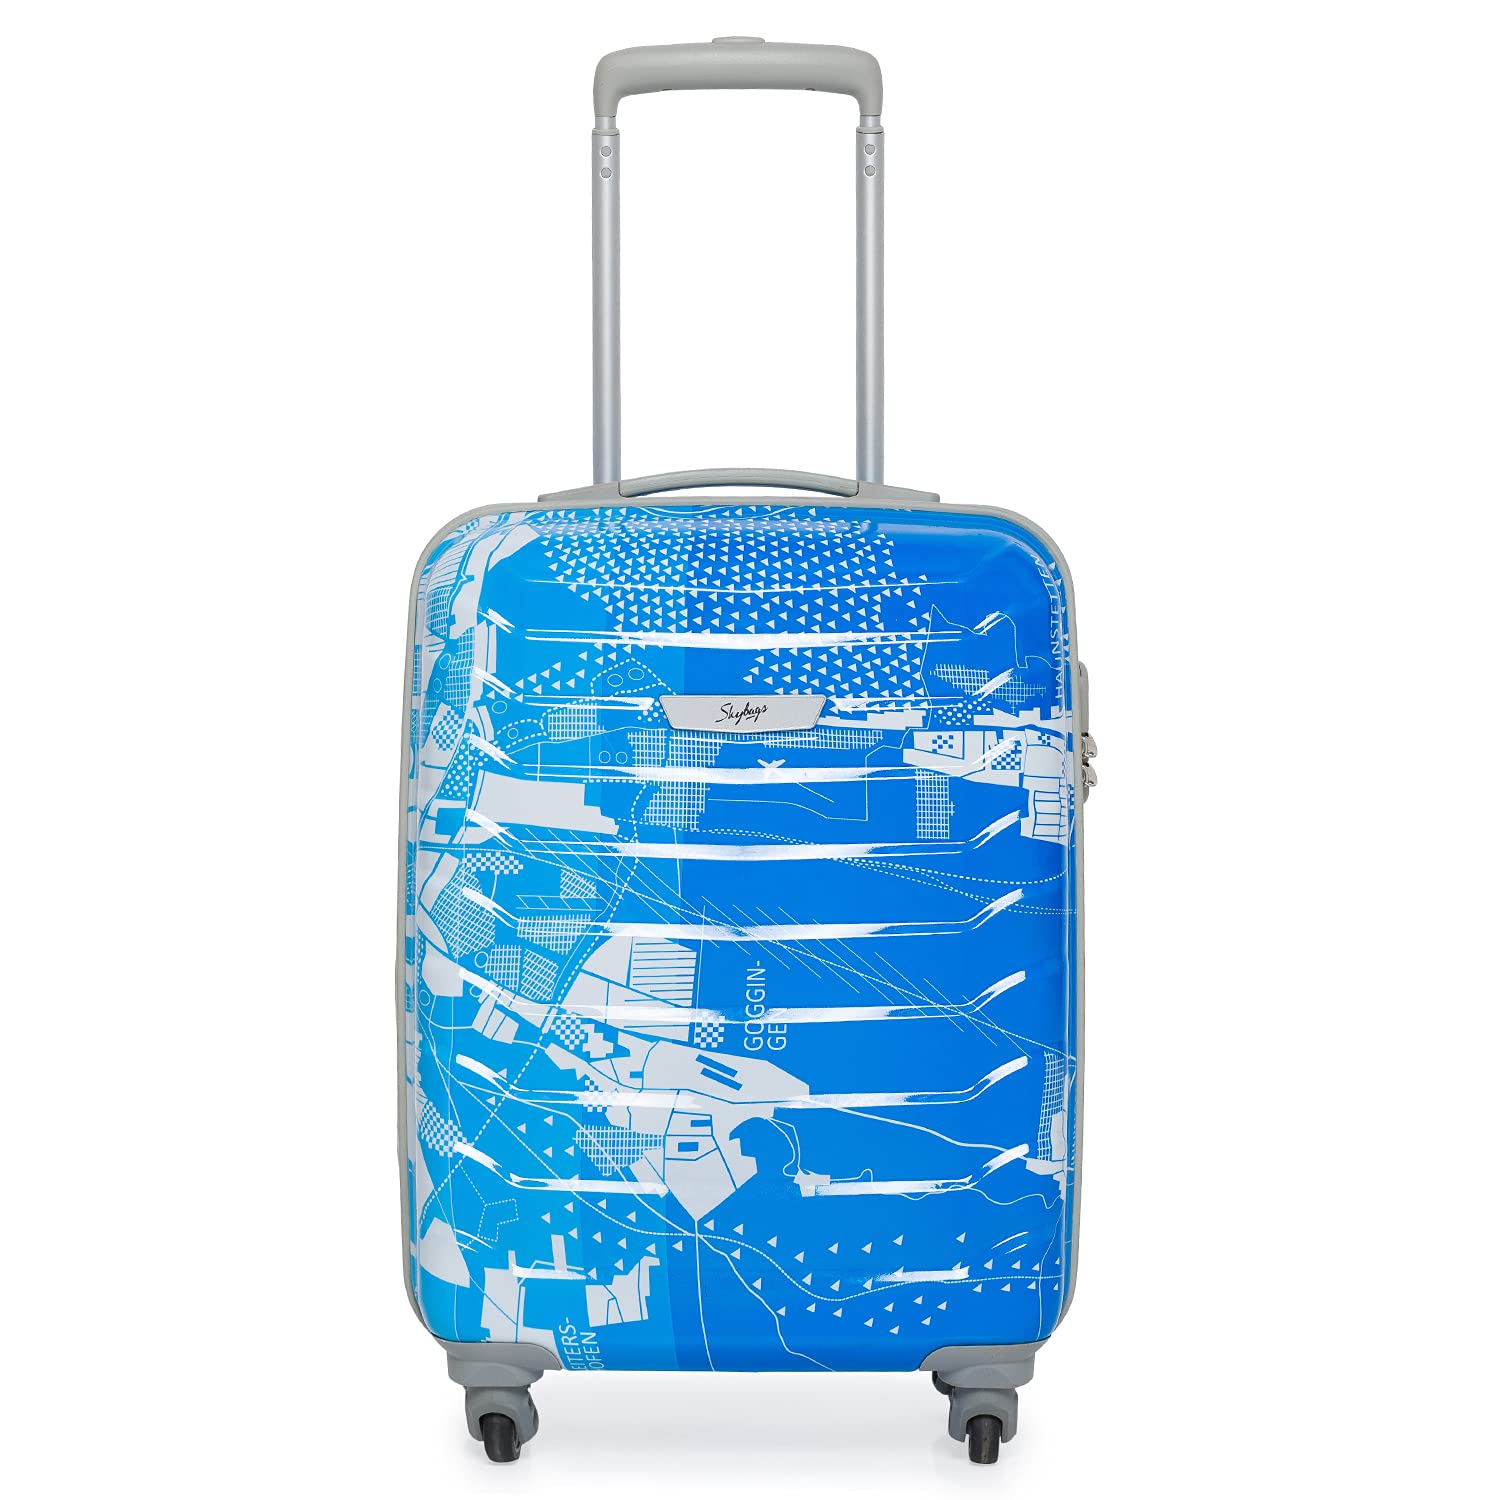 Luggage Bags On AmazonLuggage Bags On Amazon  VIP और Safari जस Luggage  Bag पर मल रह भर डसकउट जलद स कर ऑरडर  buy these safari vip luggage  bags on amazon